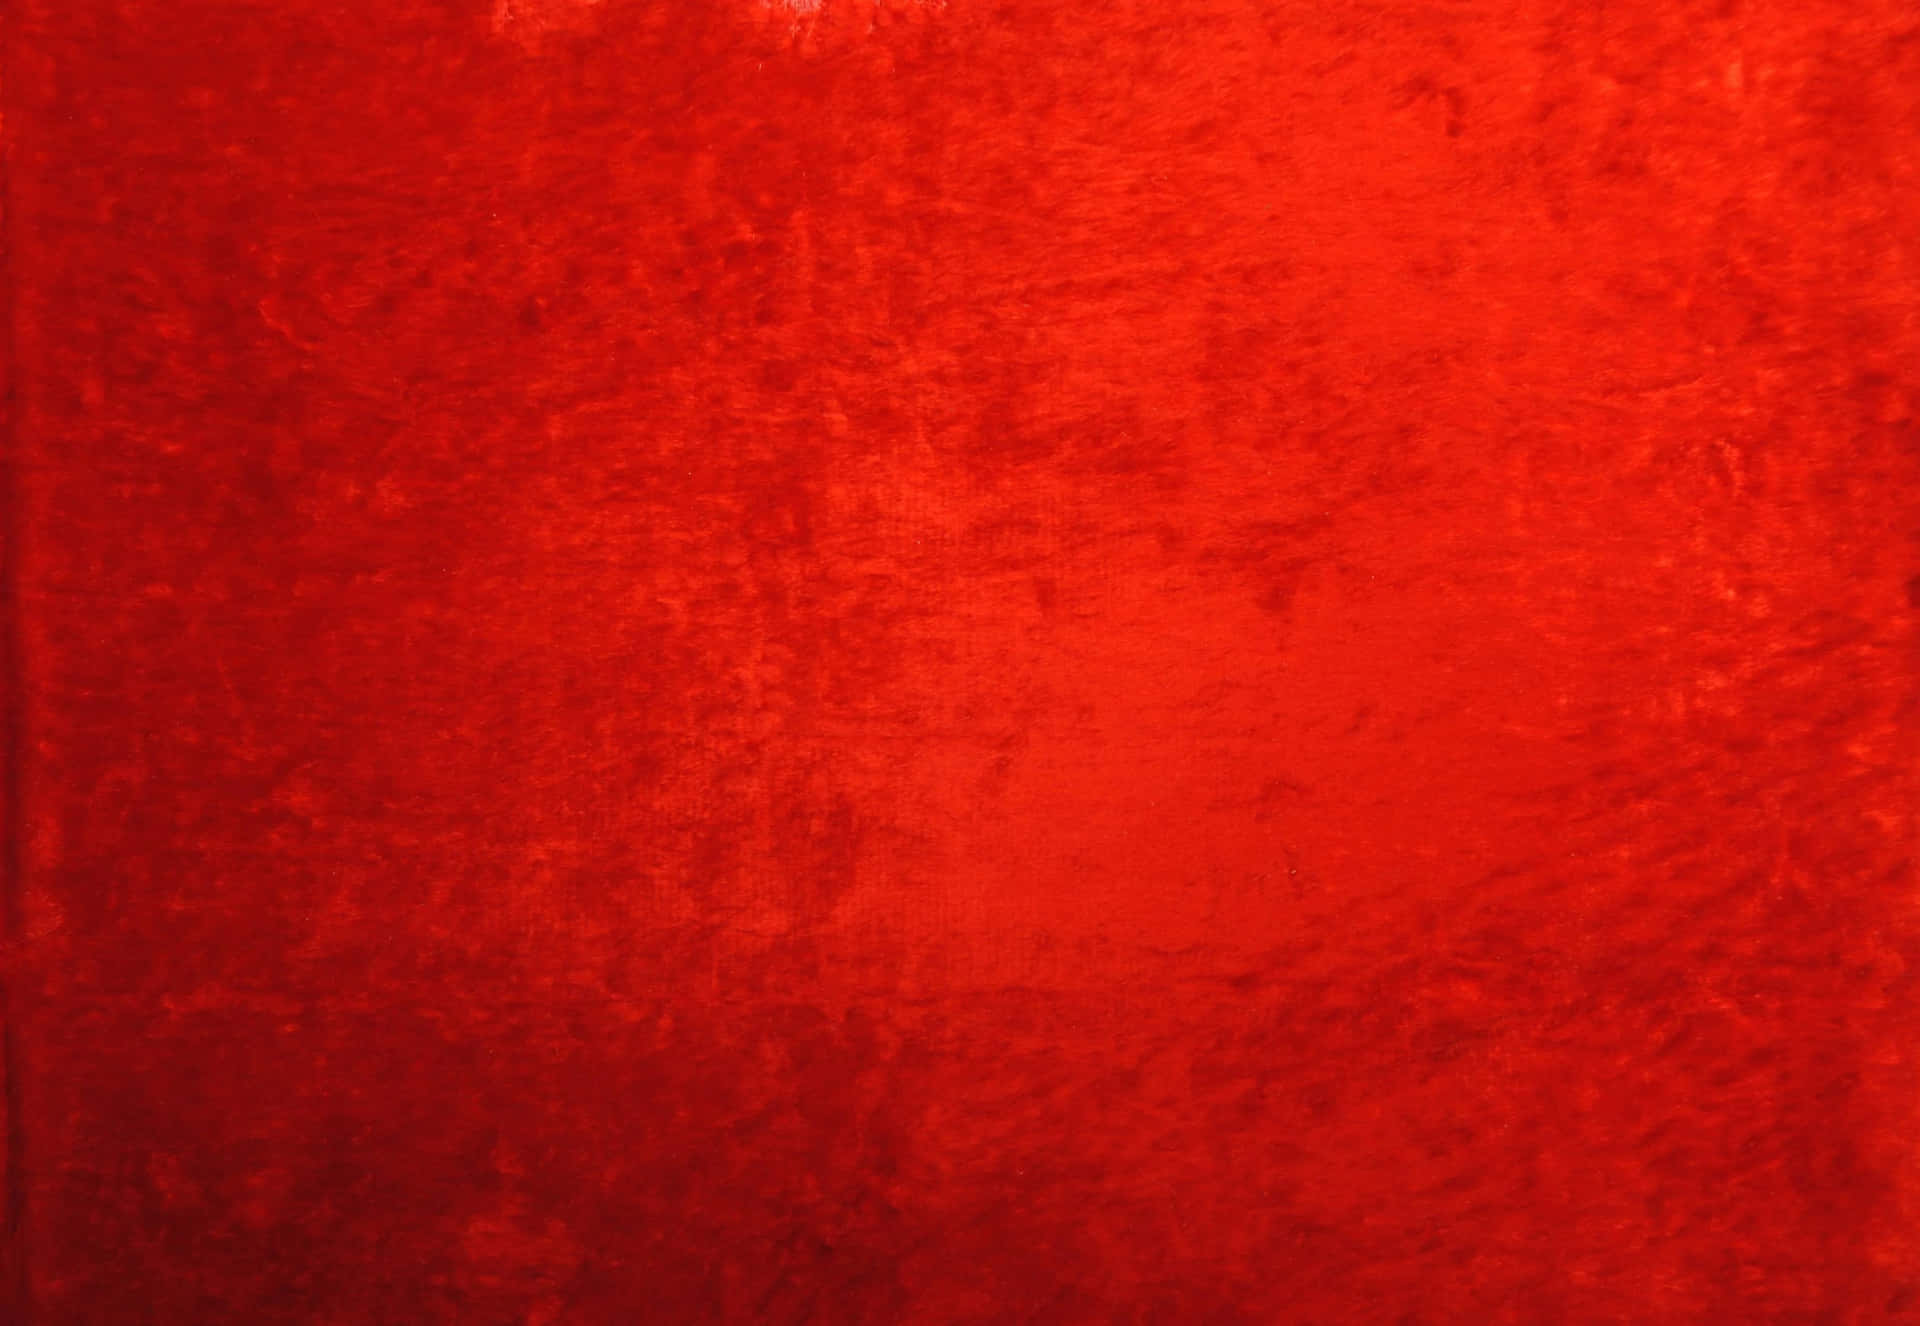 Unosfondo Rosso Vibrante E Texturizzato.